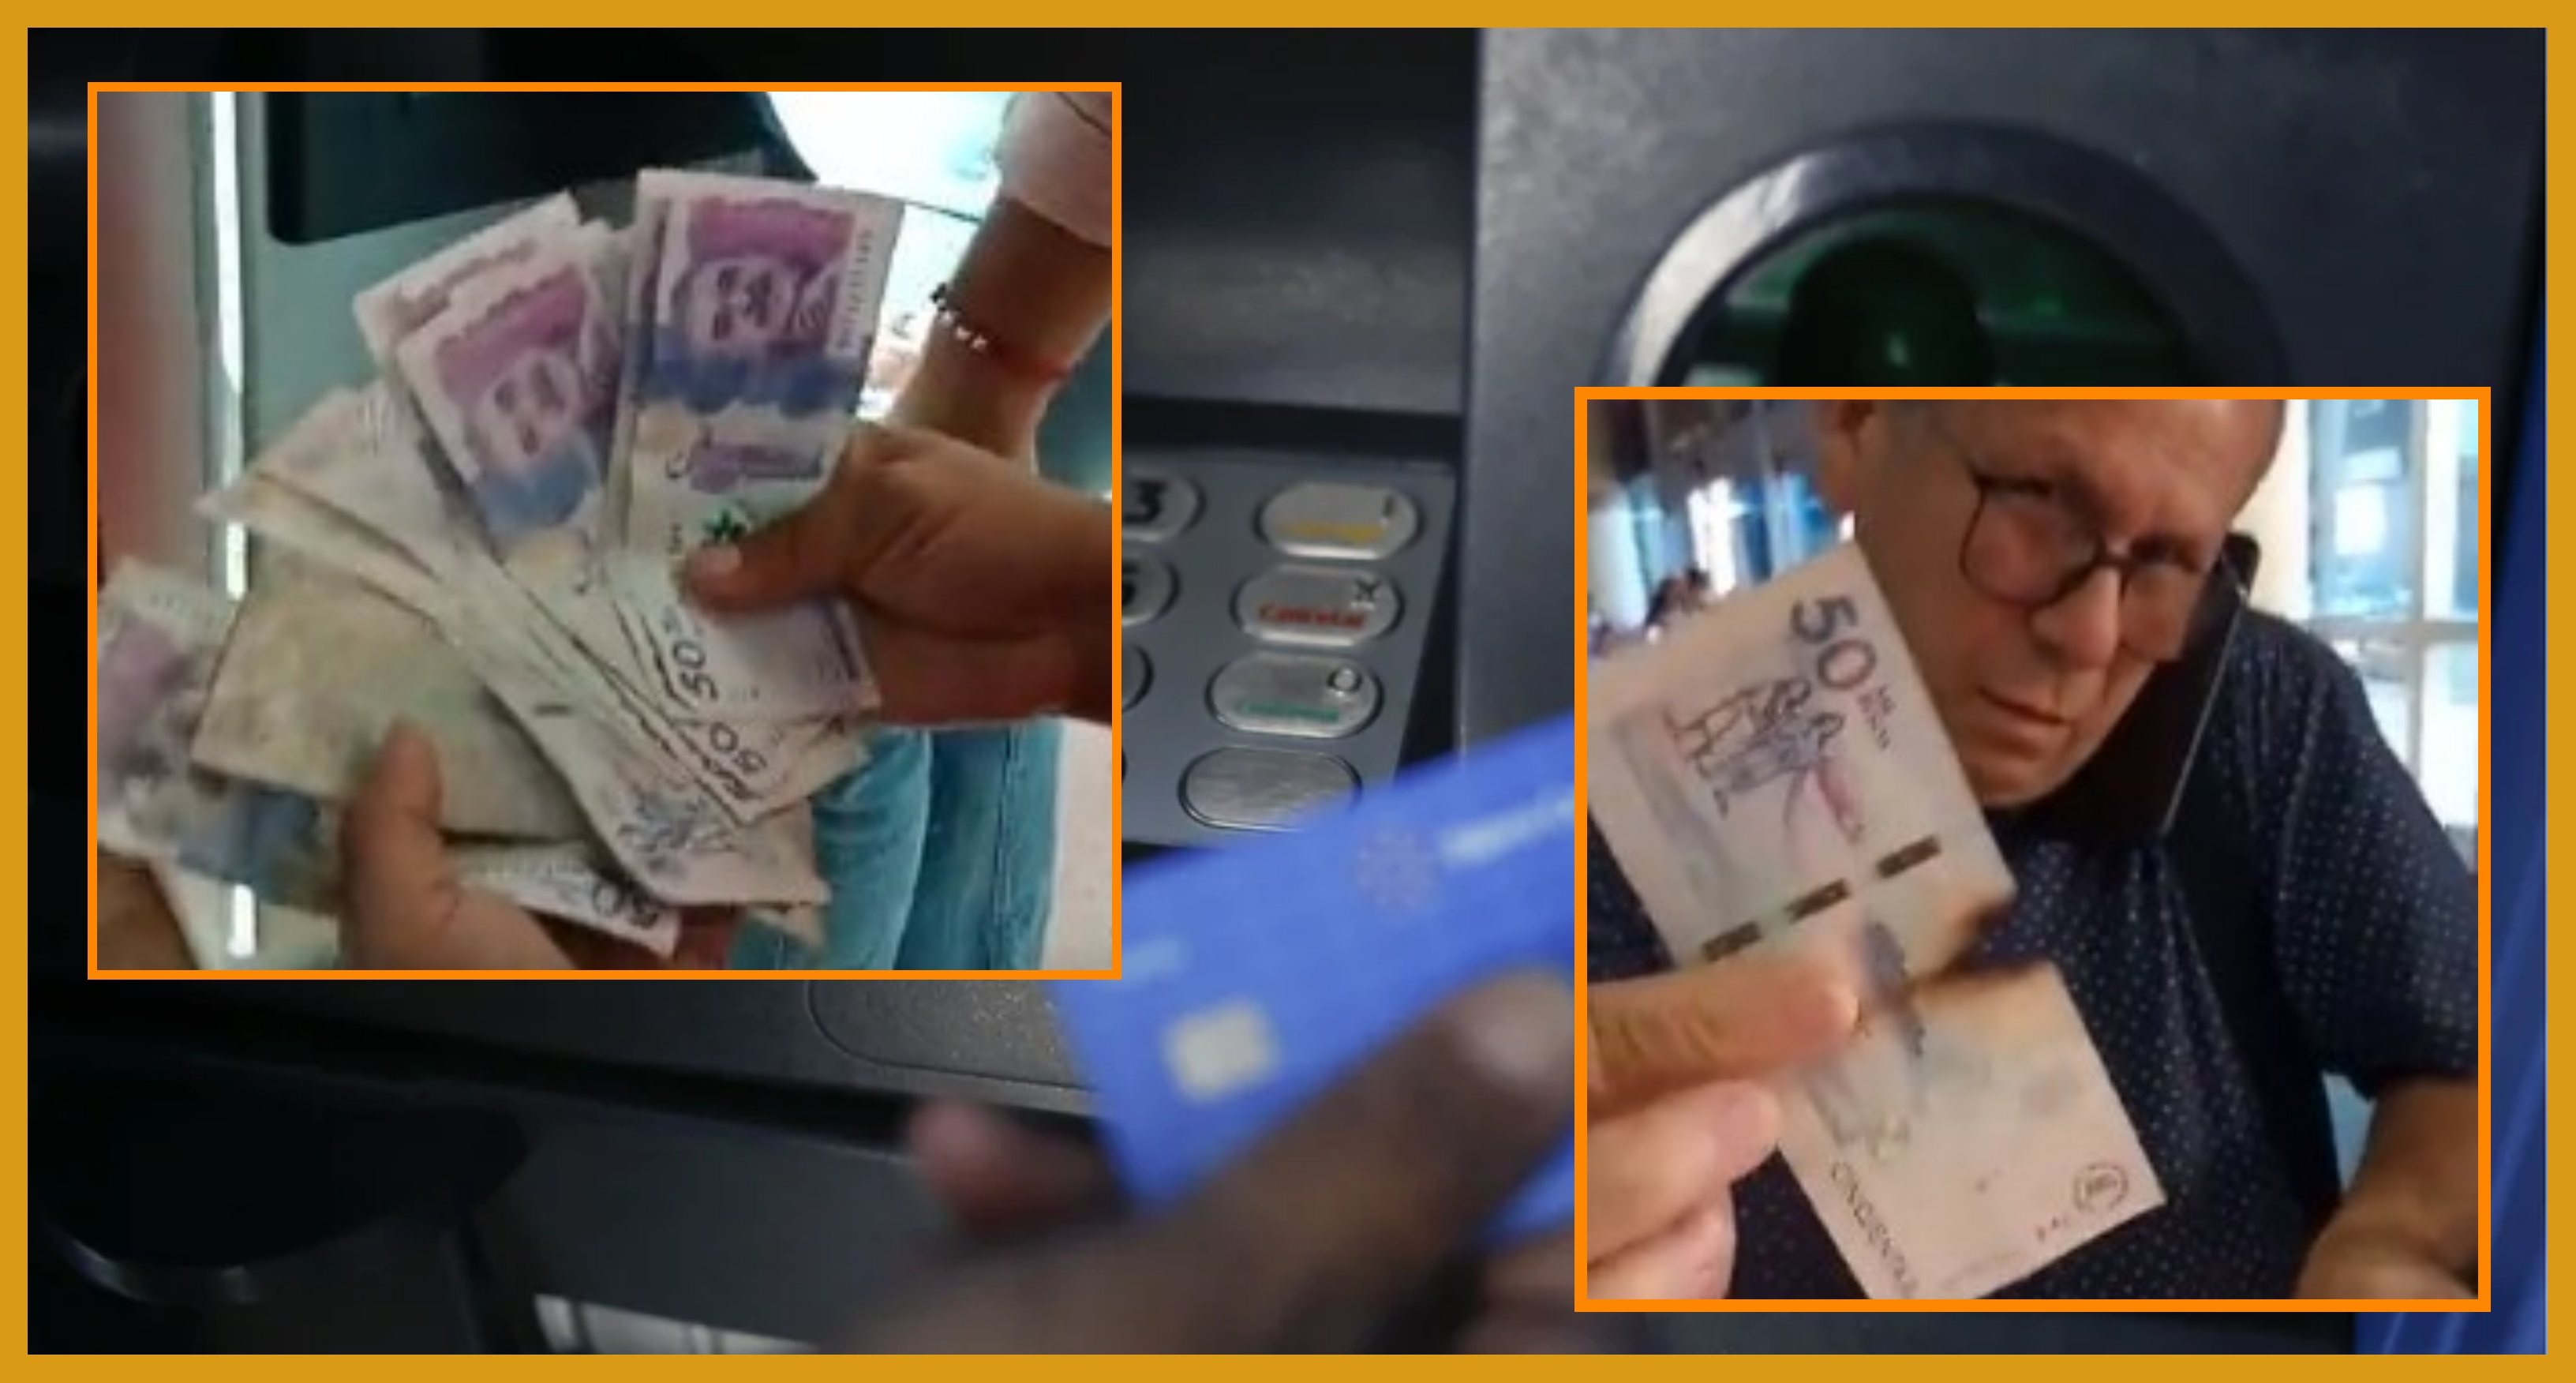 Adiós a billetes falsos en cajero automáticos pero hasta dentro de 3  años – El Financiero